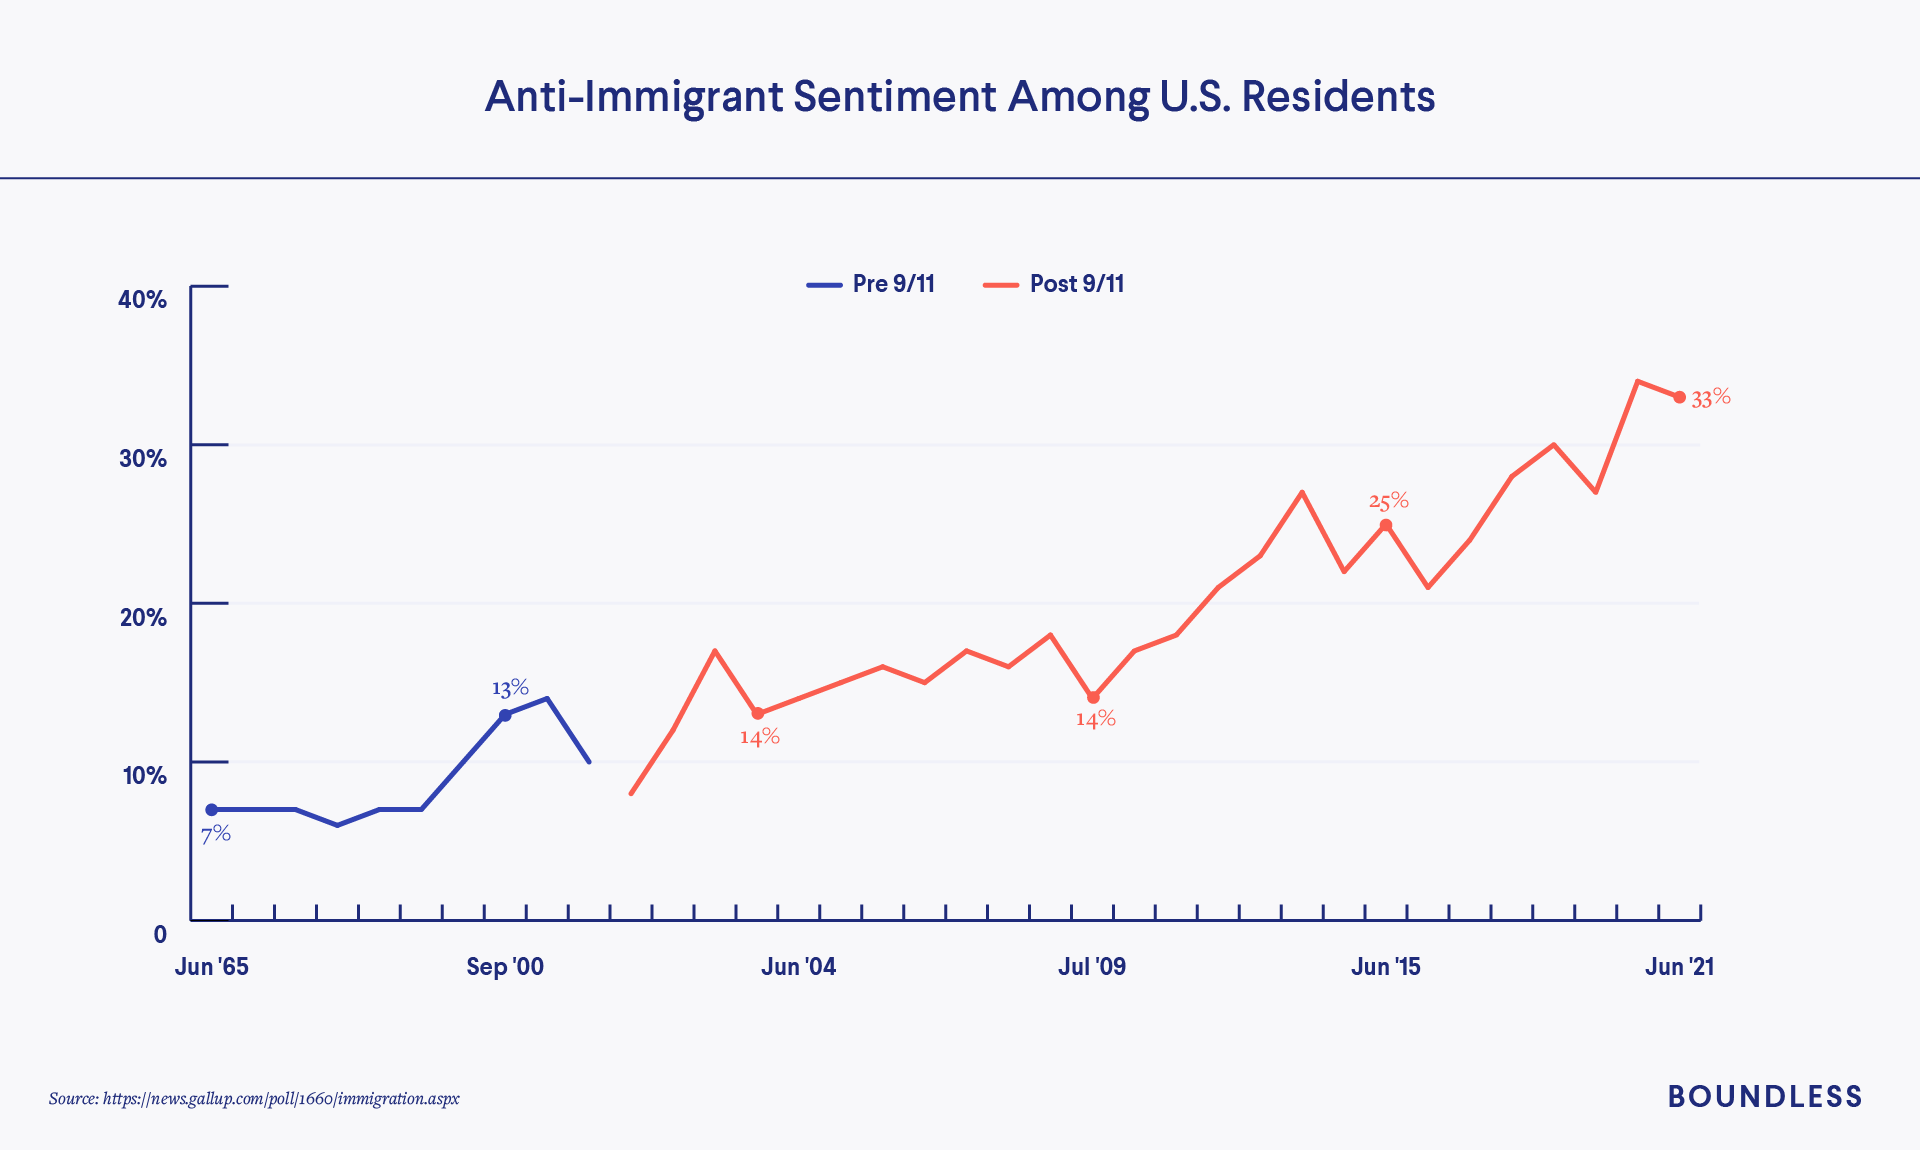 Anti-Immigrant Sentiment in US